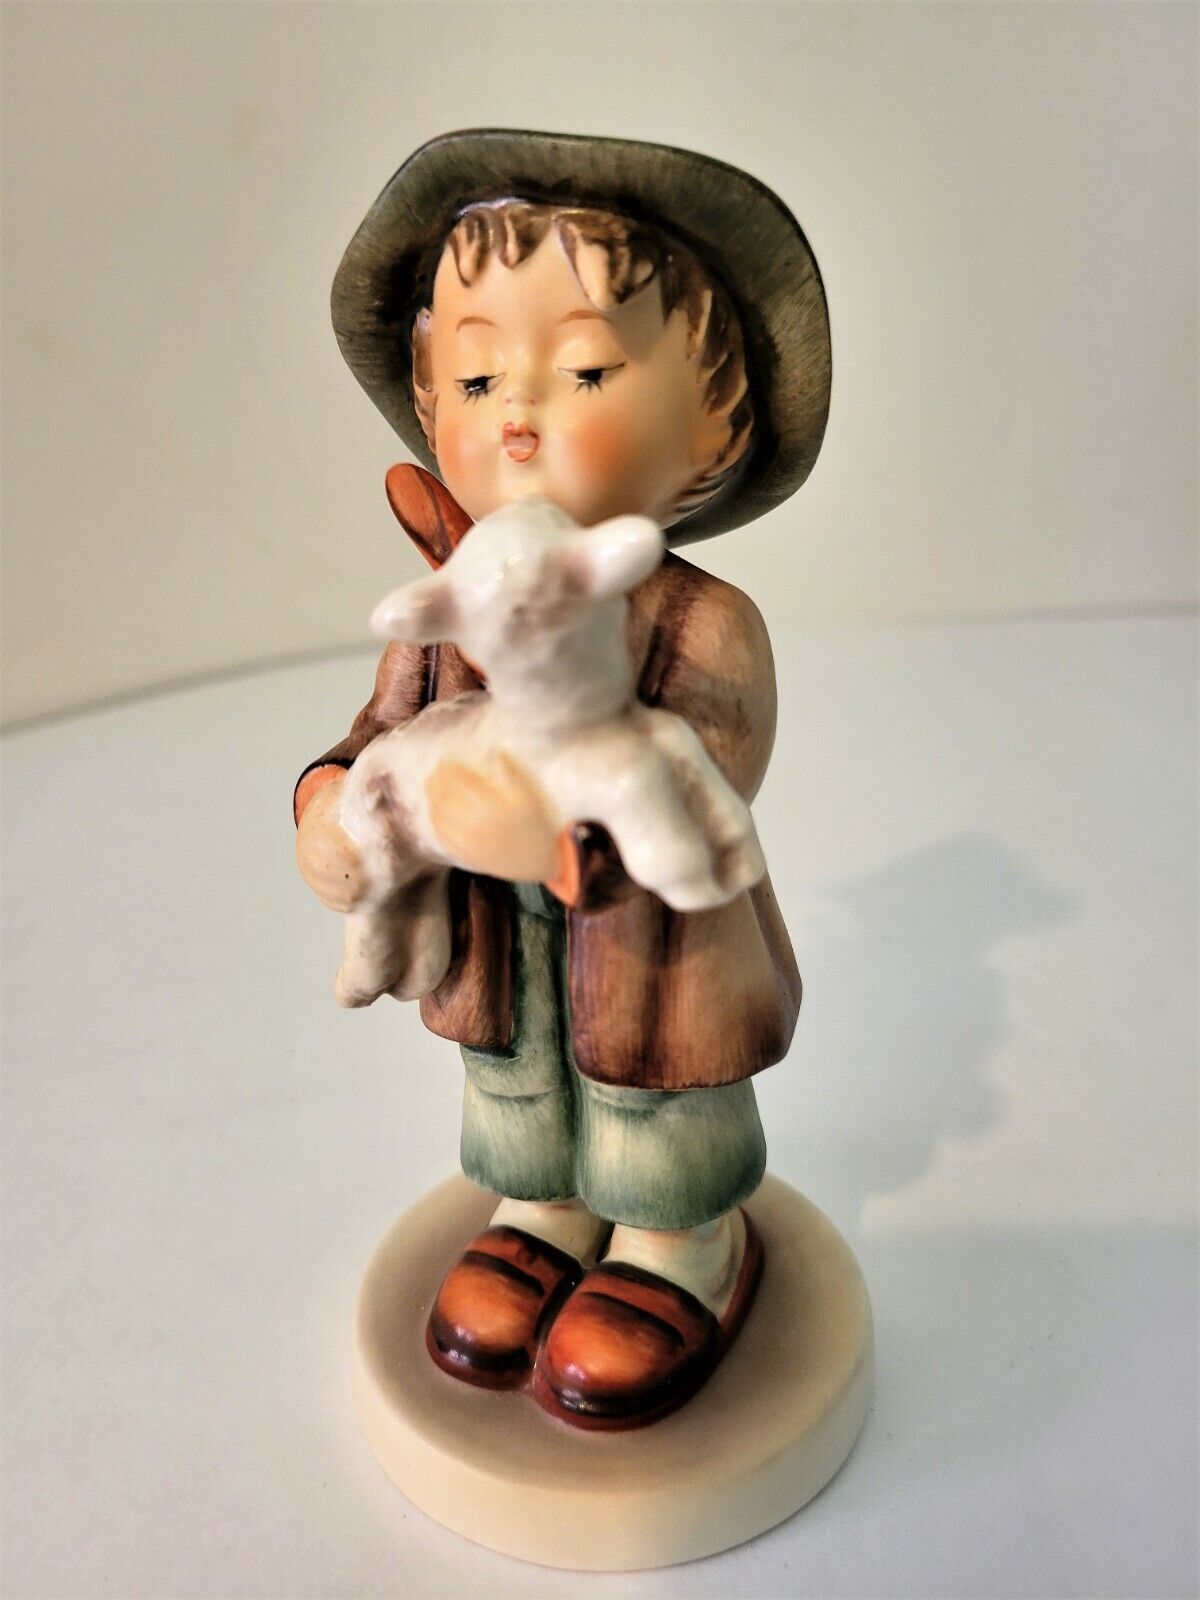 Hummel TMK3 "The Lost Sheep" Figurine #68 - 5.5" Tall - $30.10